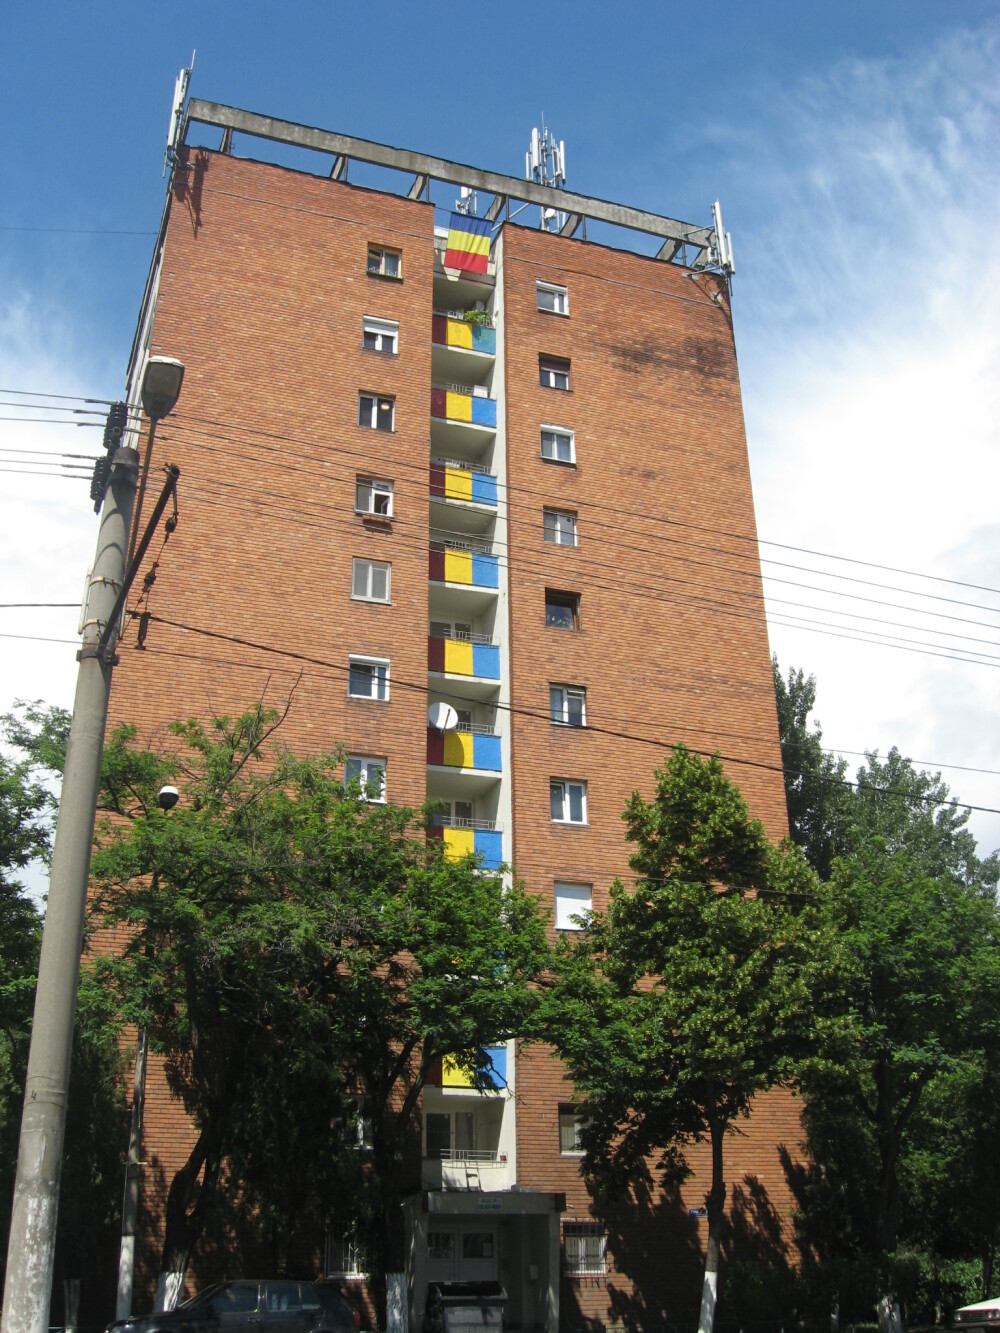 O moda neobisnuita apare in Arad. De ce isi zugravesc oamenii blocurile in culori de steaguri - Imaginea 2